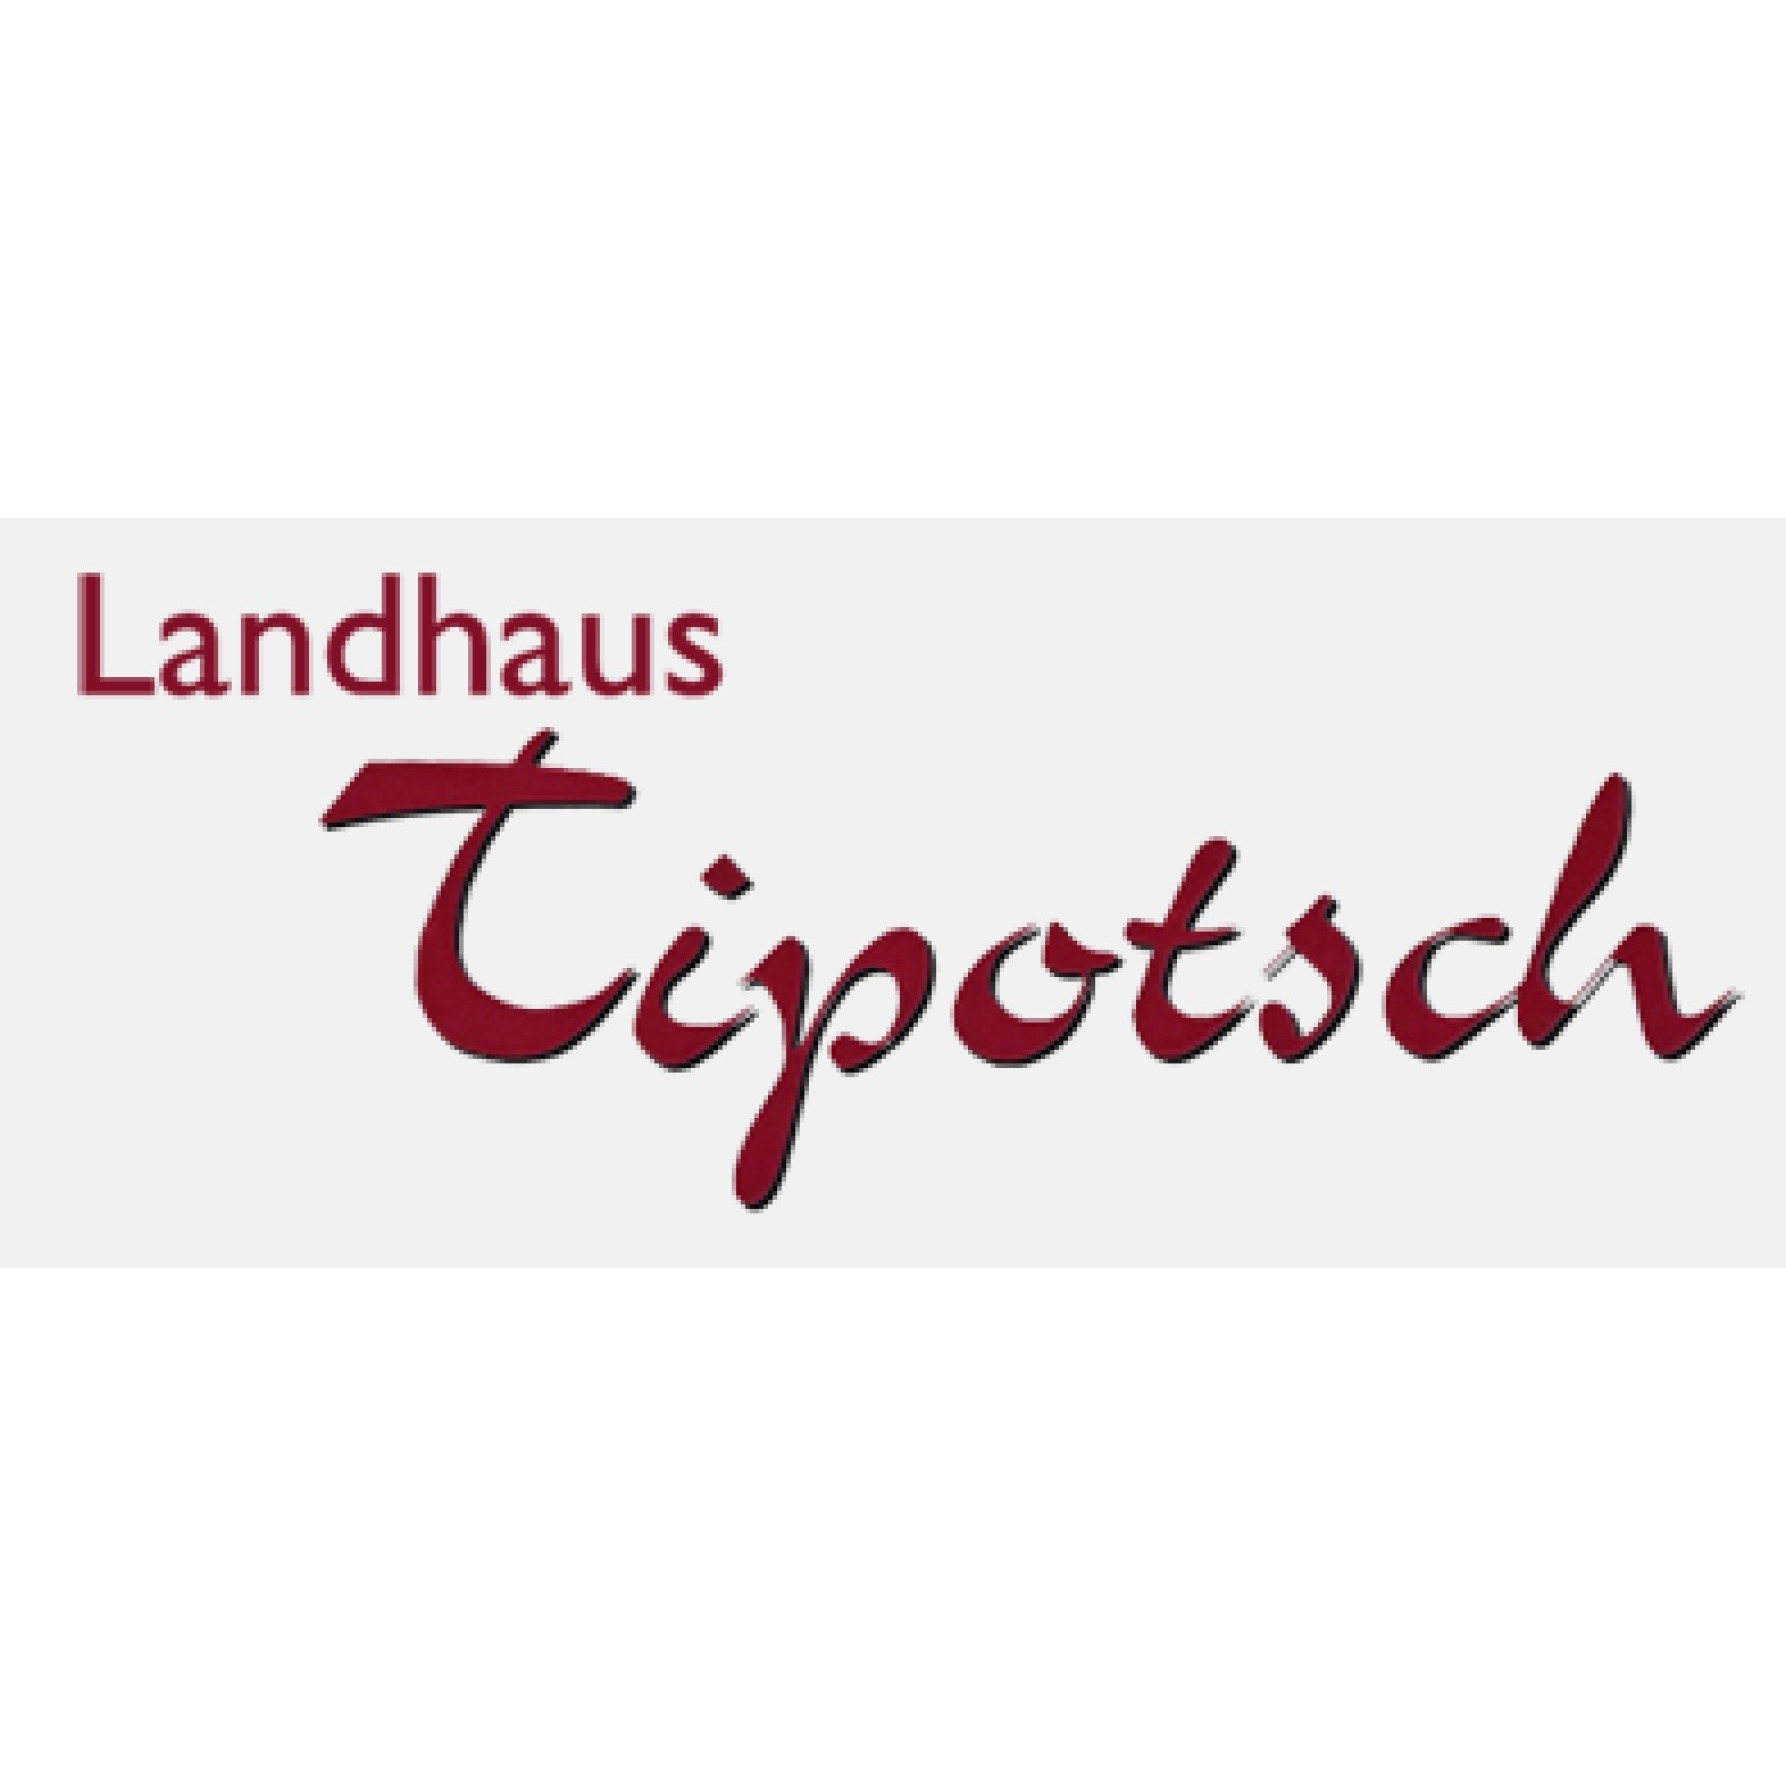 Landhaus Tipotsch - Wolfgang Tipotsch